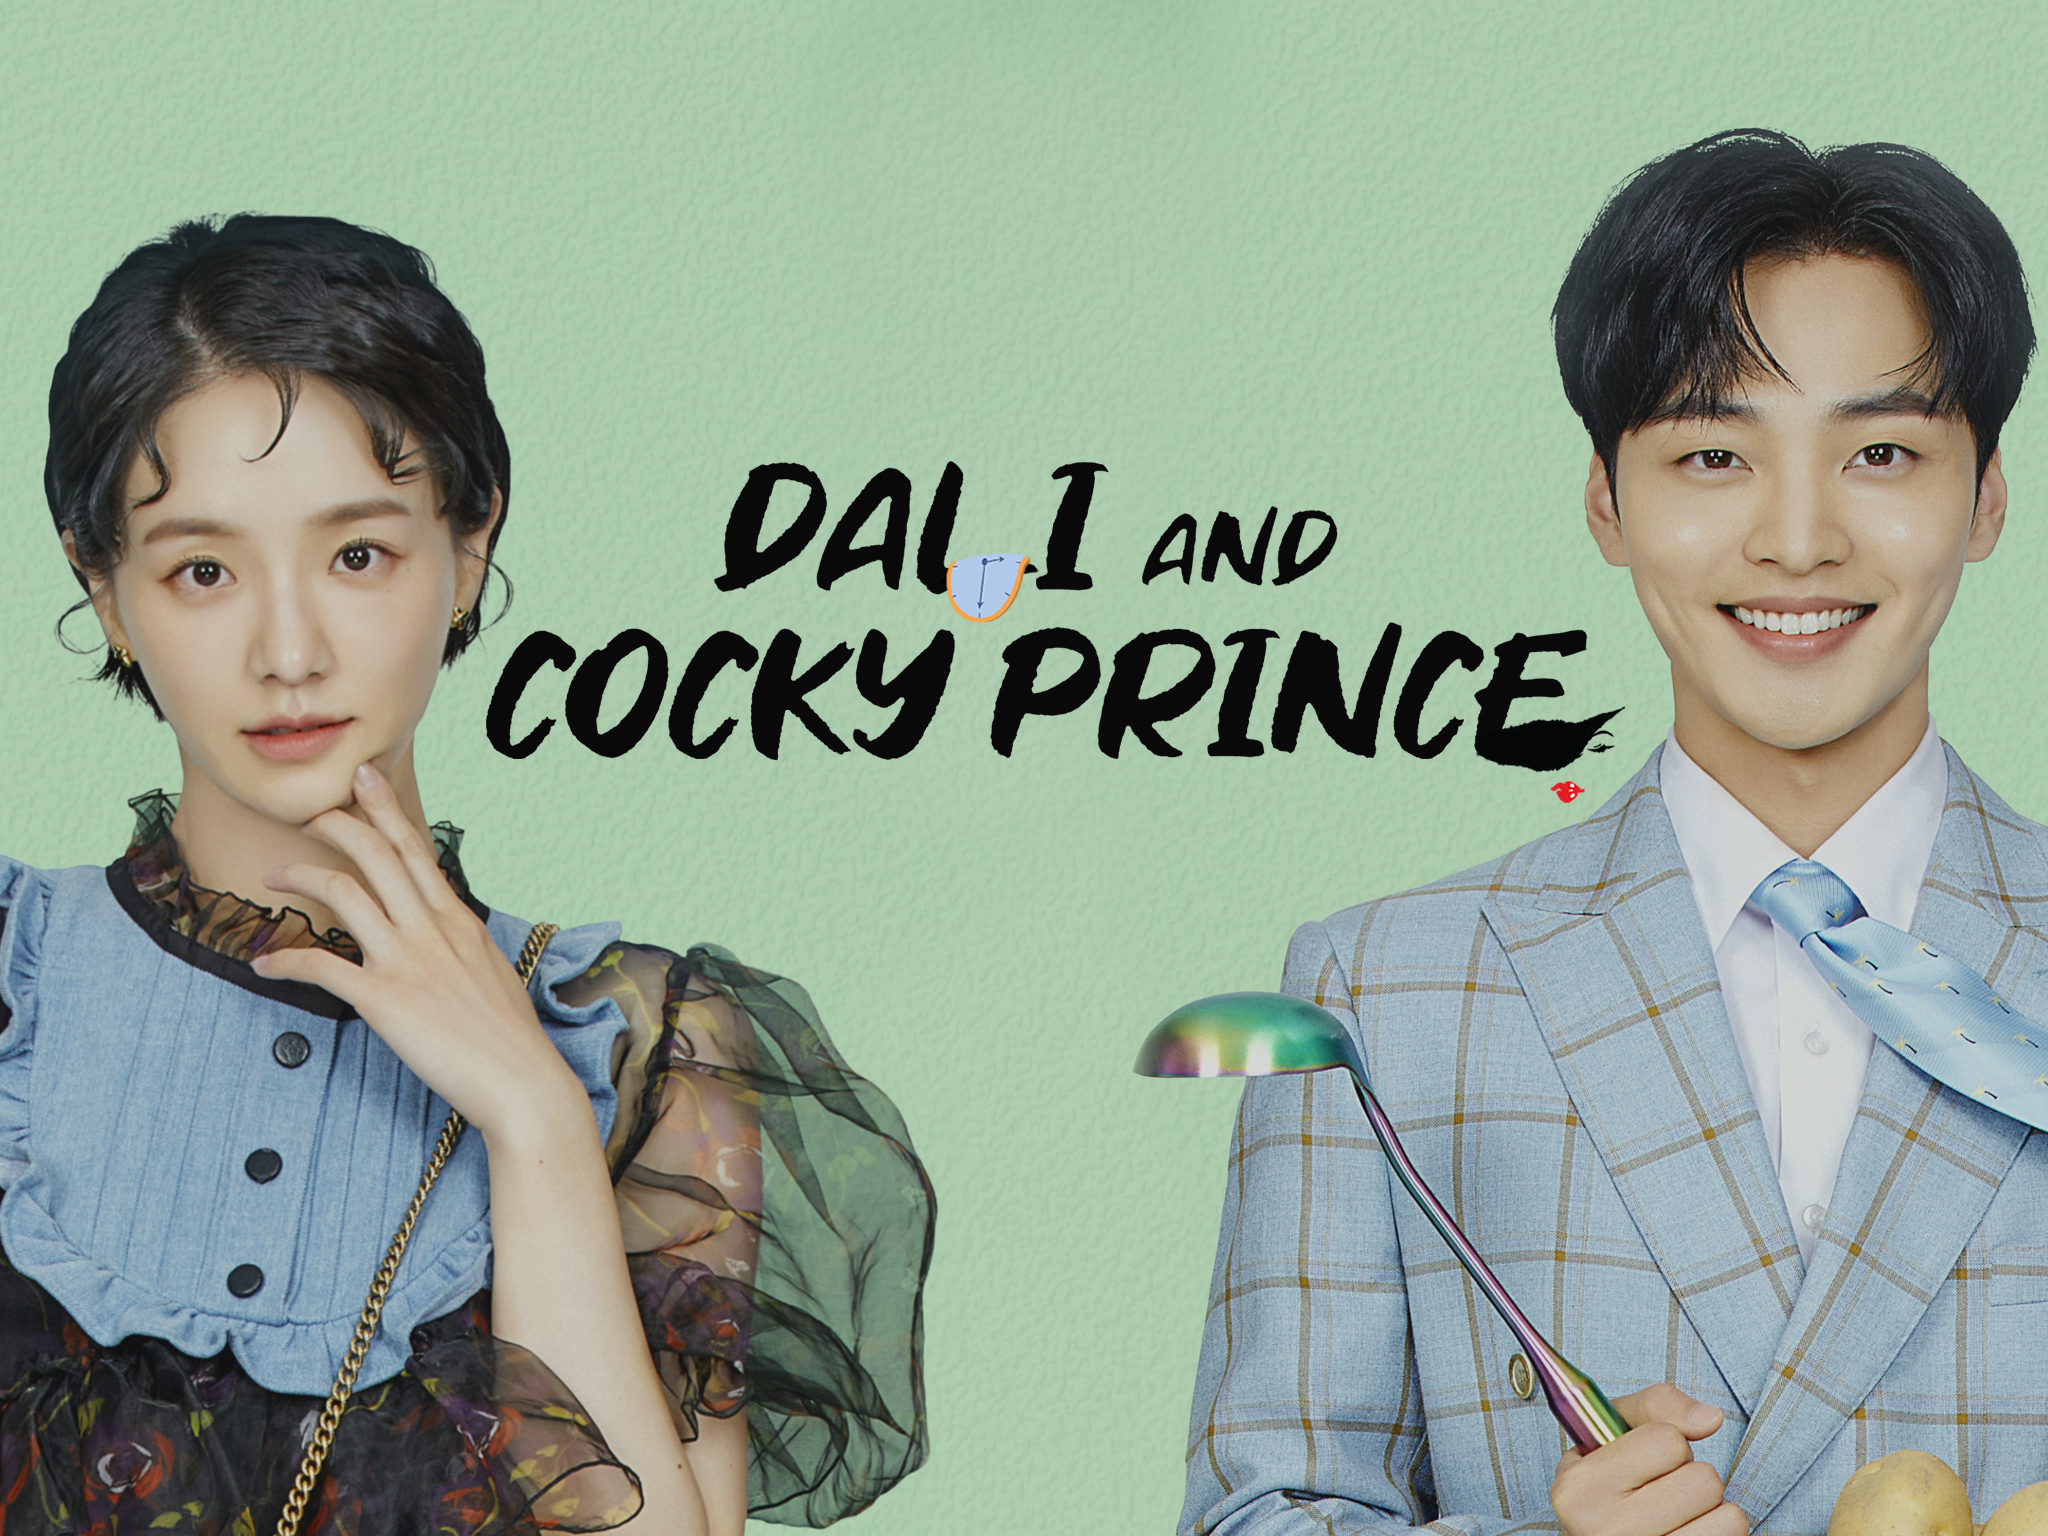 Dali Và Hoàng Tử Ngổ Ngáo – Dali And Cocky Prince (2021) Full HD Vietsub – Tập 2